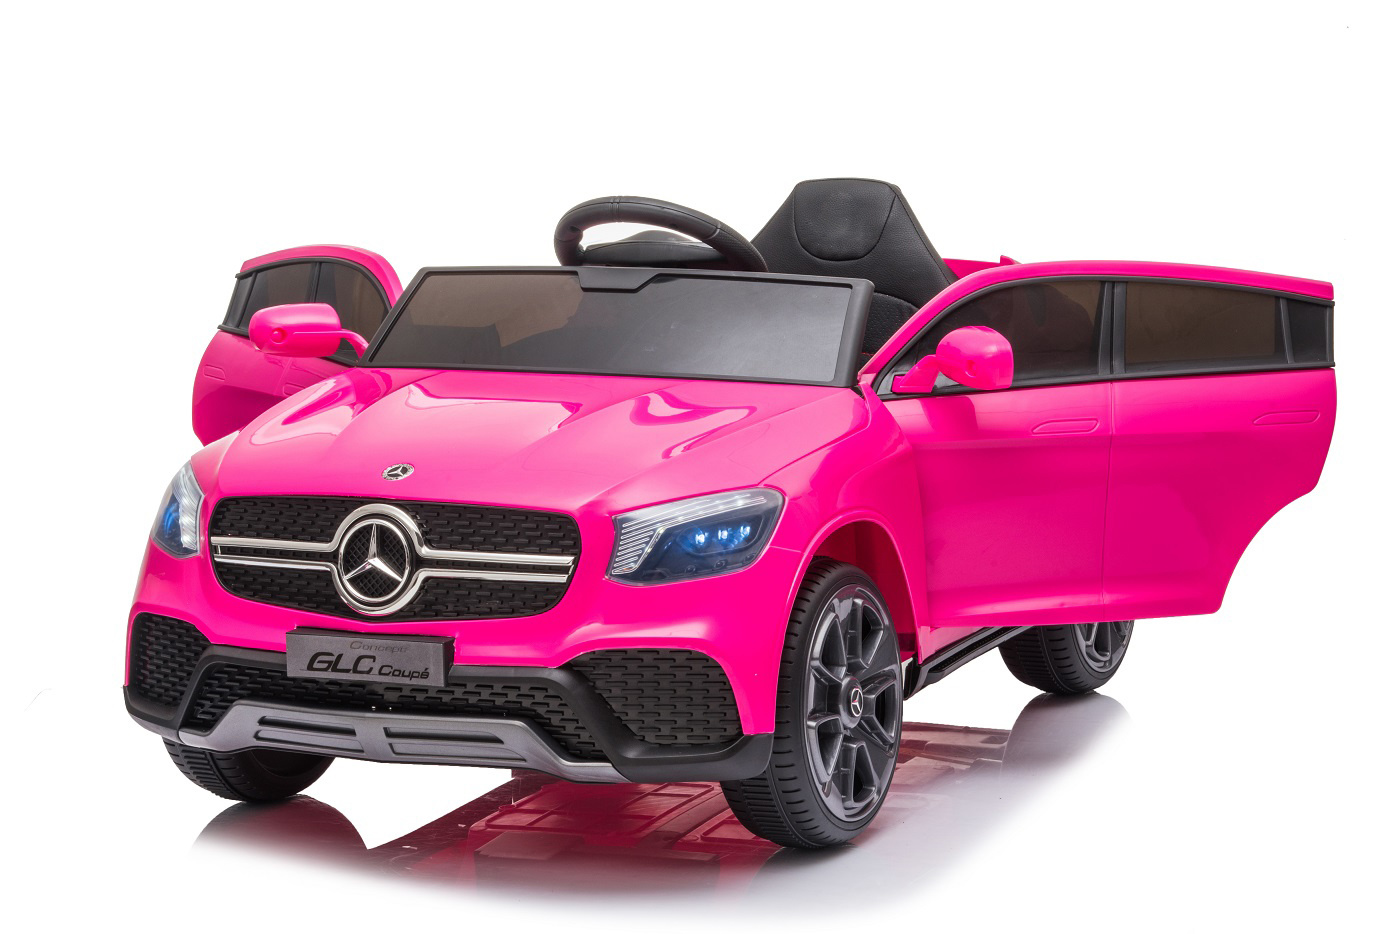 vier keer uitvinding Nat Mercedes GLC63 Coupe AMG 12V kinderauto roze - Kidsrides